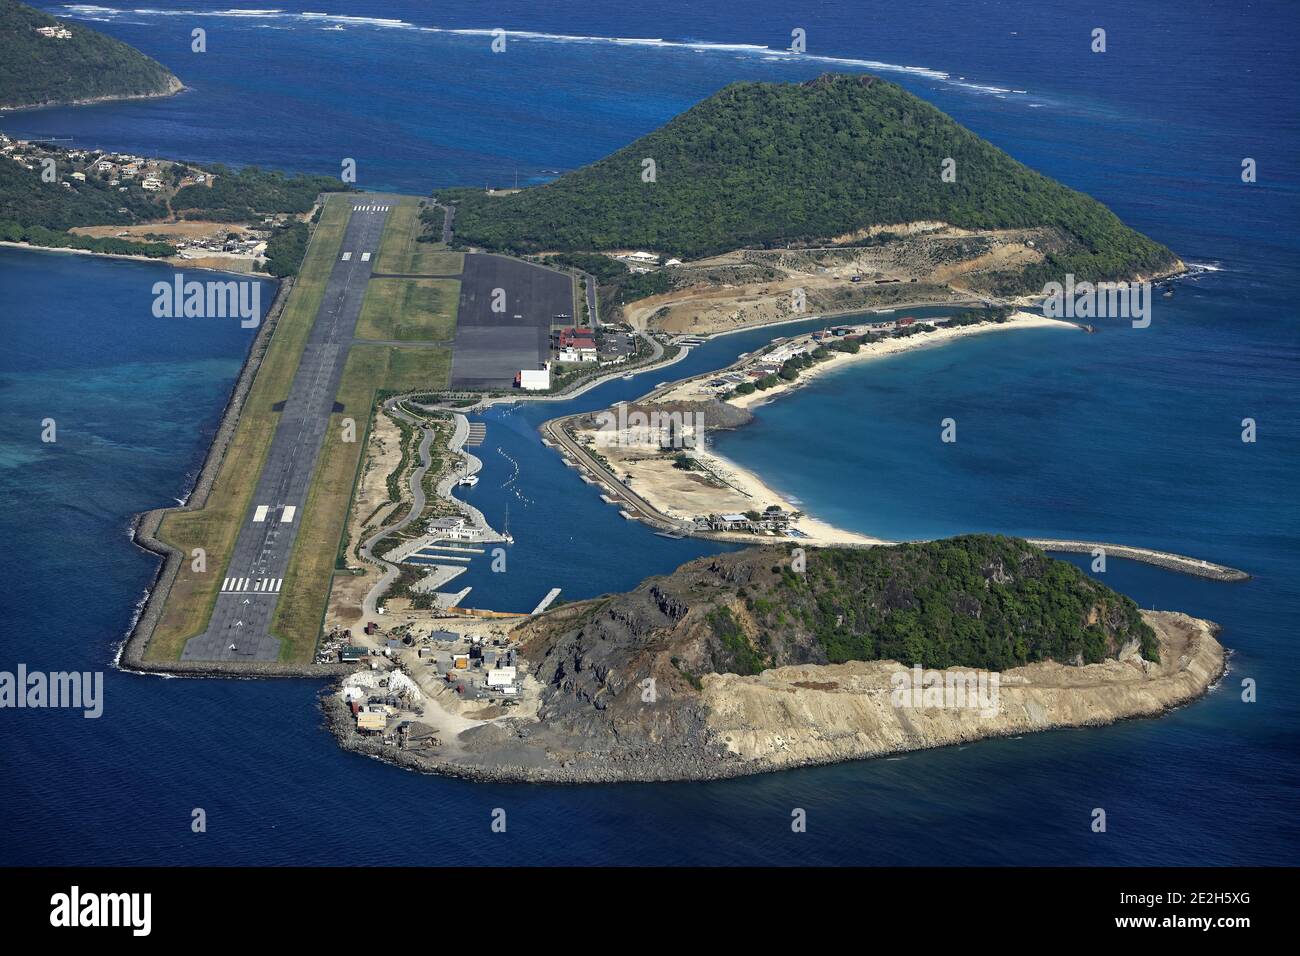 Caraïbes, Saint-Vincent-et-les Grenadines : vue aérienne de l'île de Canouan, Charlestown et de son aéroport avec deux îlots (l'islot et Canouan Baleine) Banque D'Images